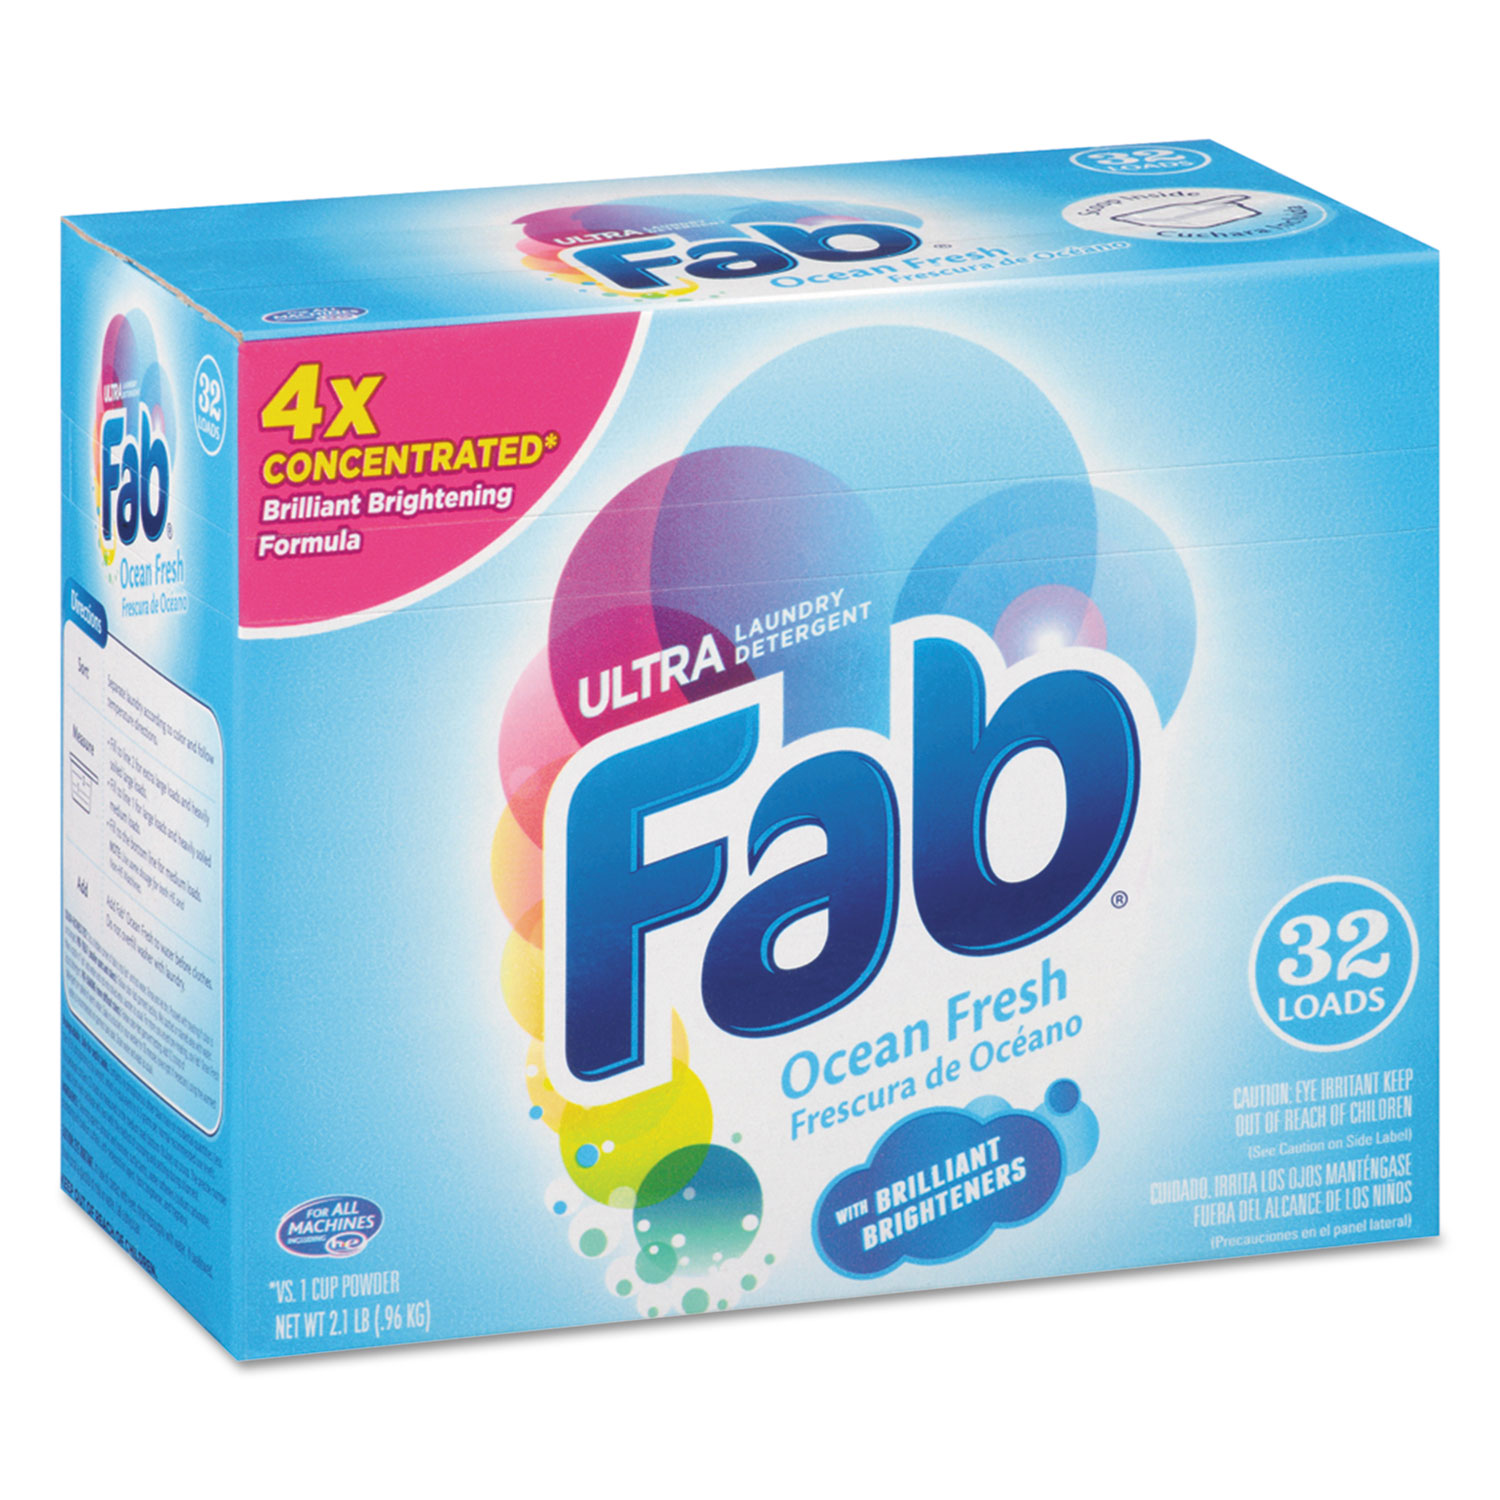 2X Powdered Laundry Detergent, Ocean Breeze, 2.1lb Box, 4/Carton